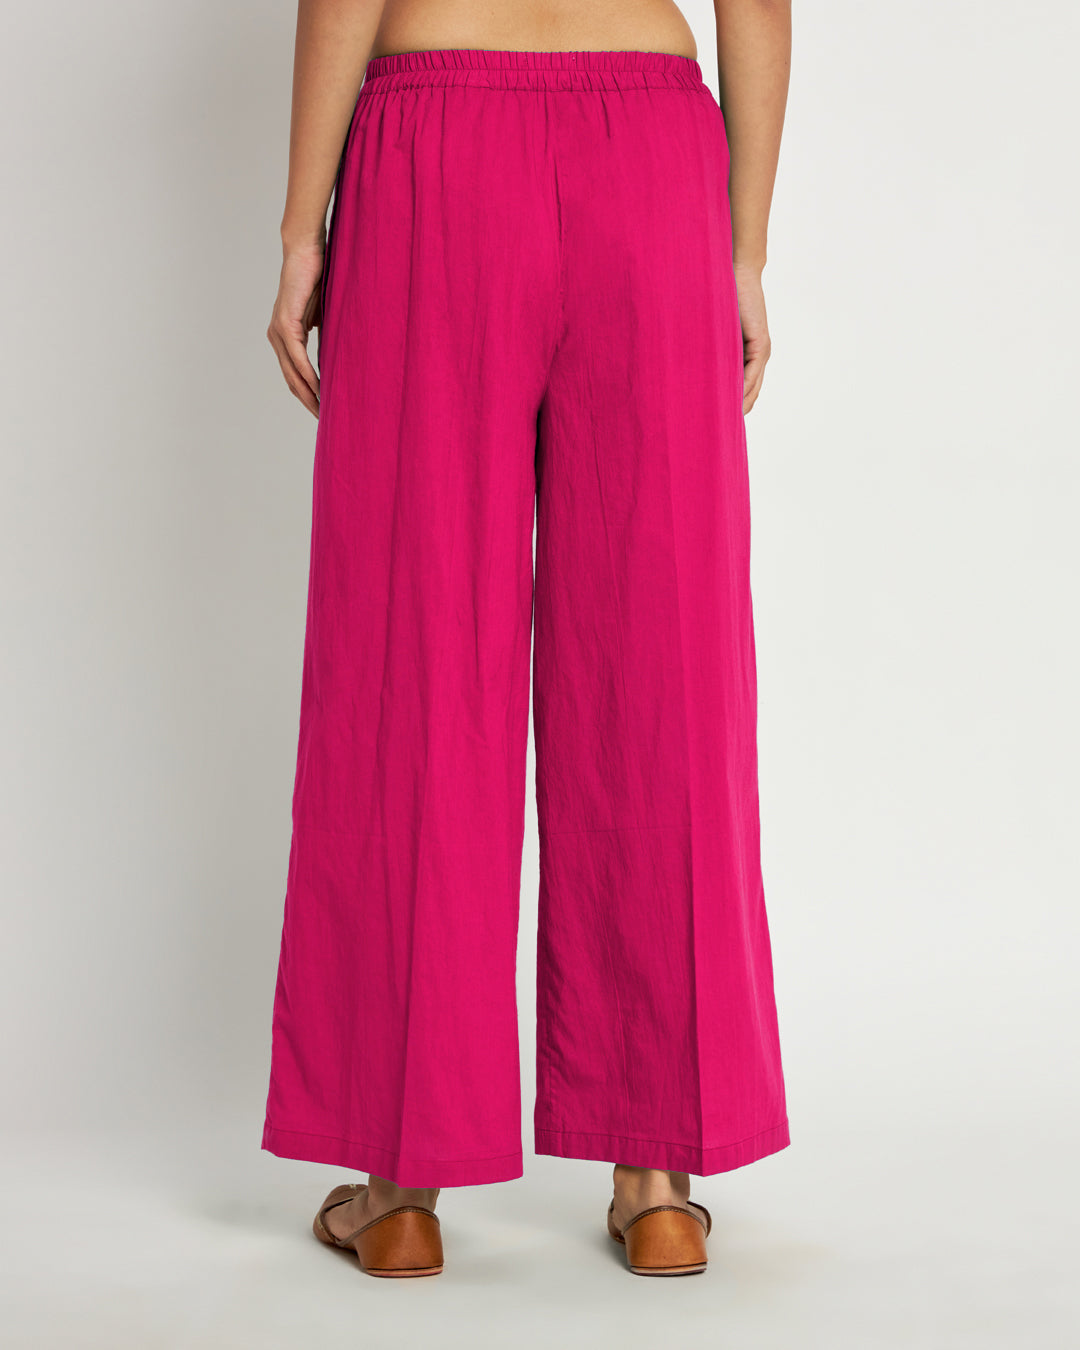 Combo: Queen's Gulabi & Iris Pink Wide Pants- Set Of 2